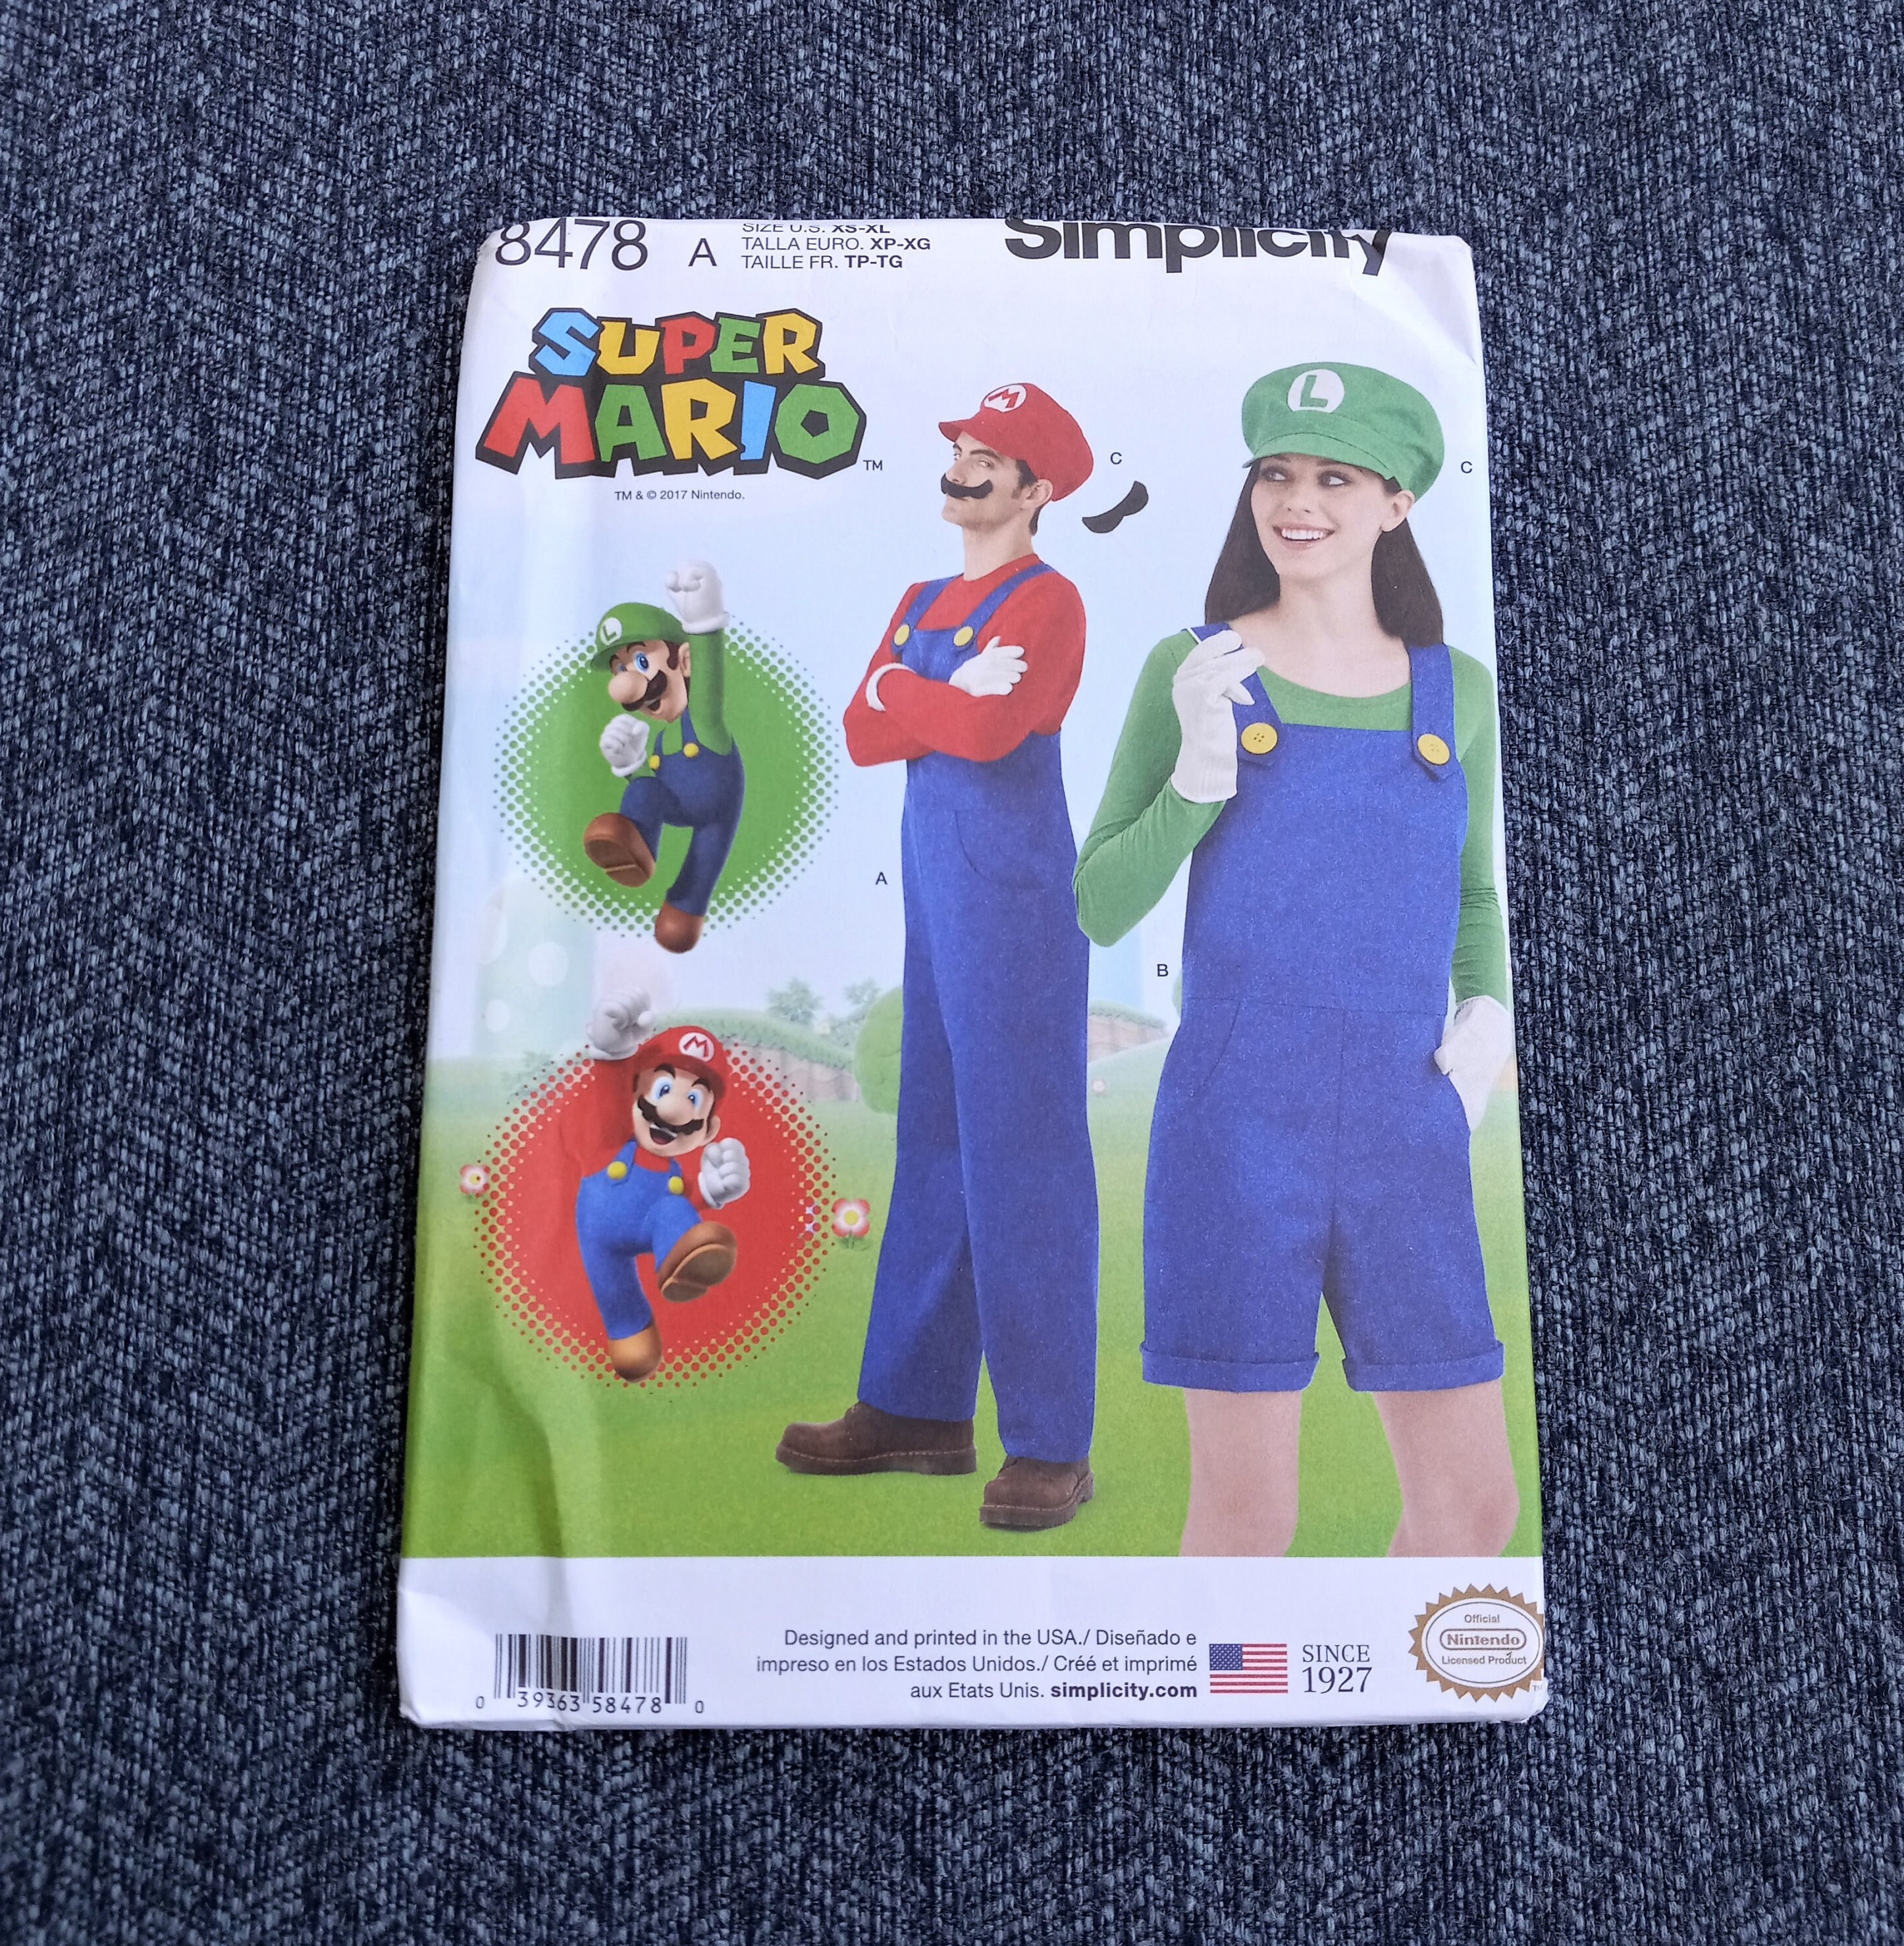 Déguisement Luigi Deluxe des Super Mario Brothers pour homme